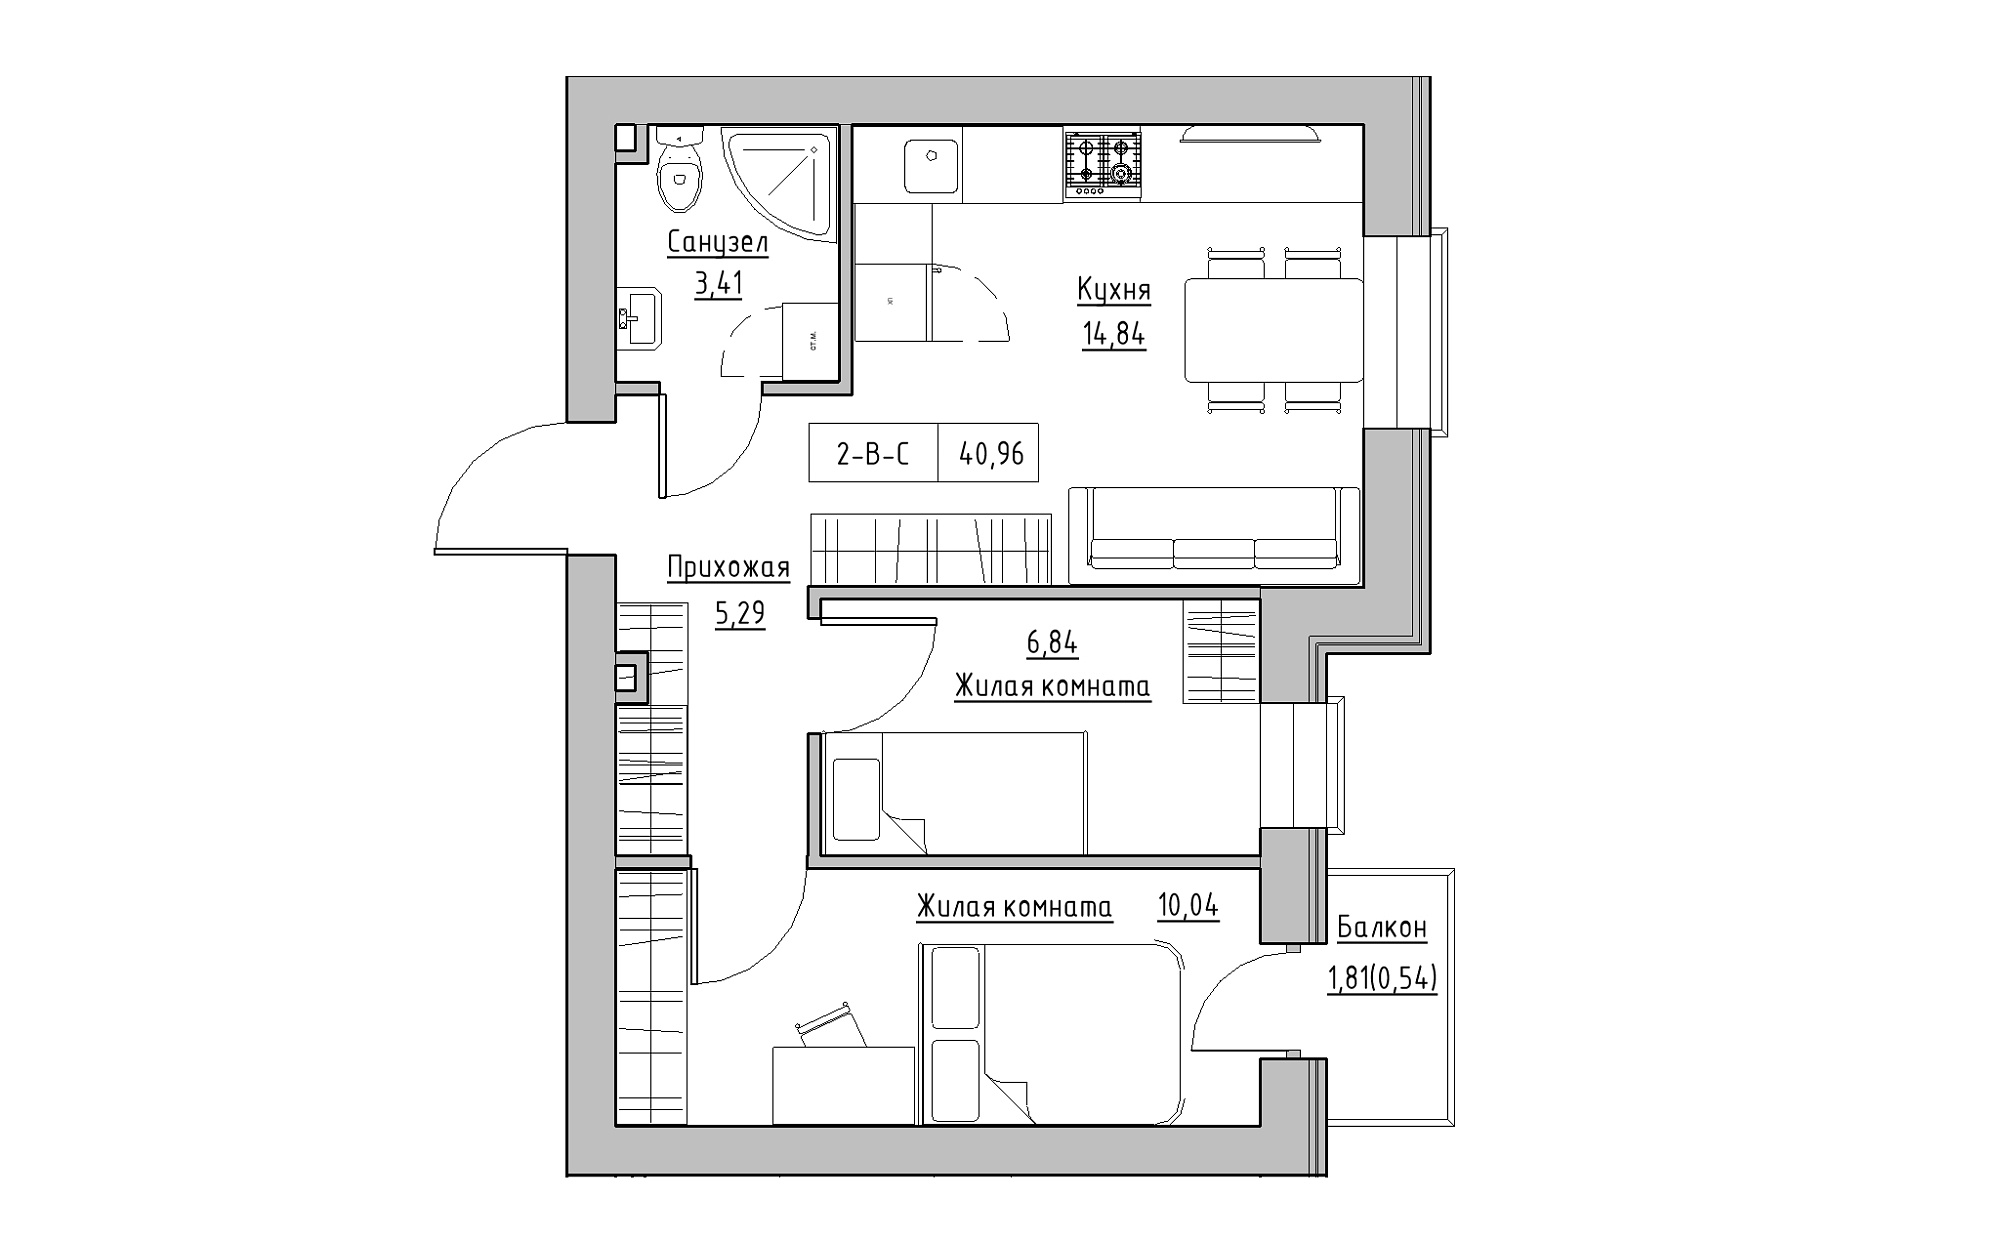 Планировка 2-к квартира площей 40.96м2, KS-022-04/0010.